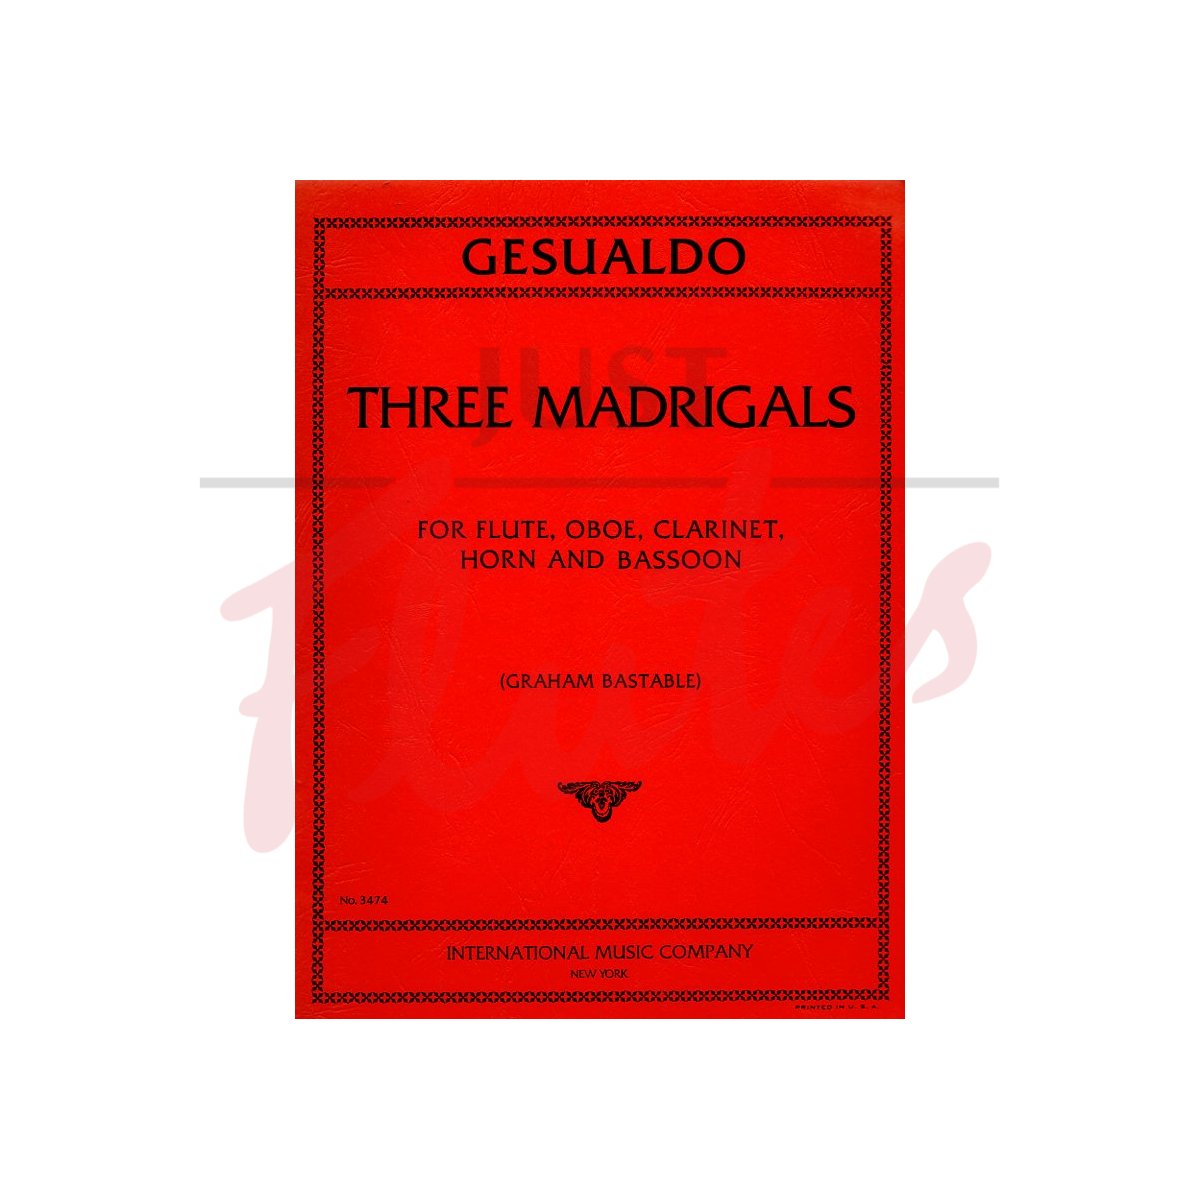 Three Madrigals